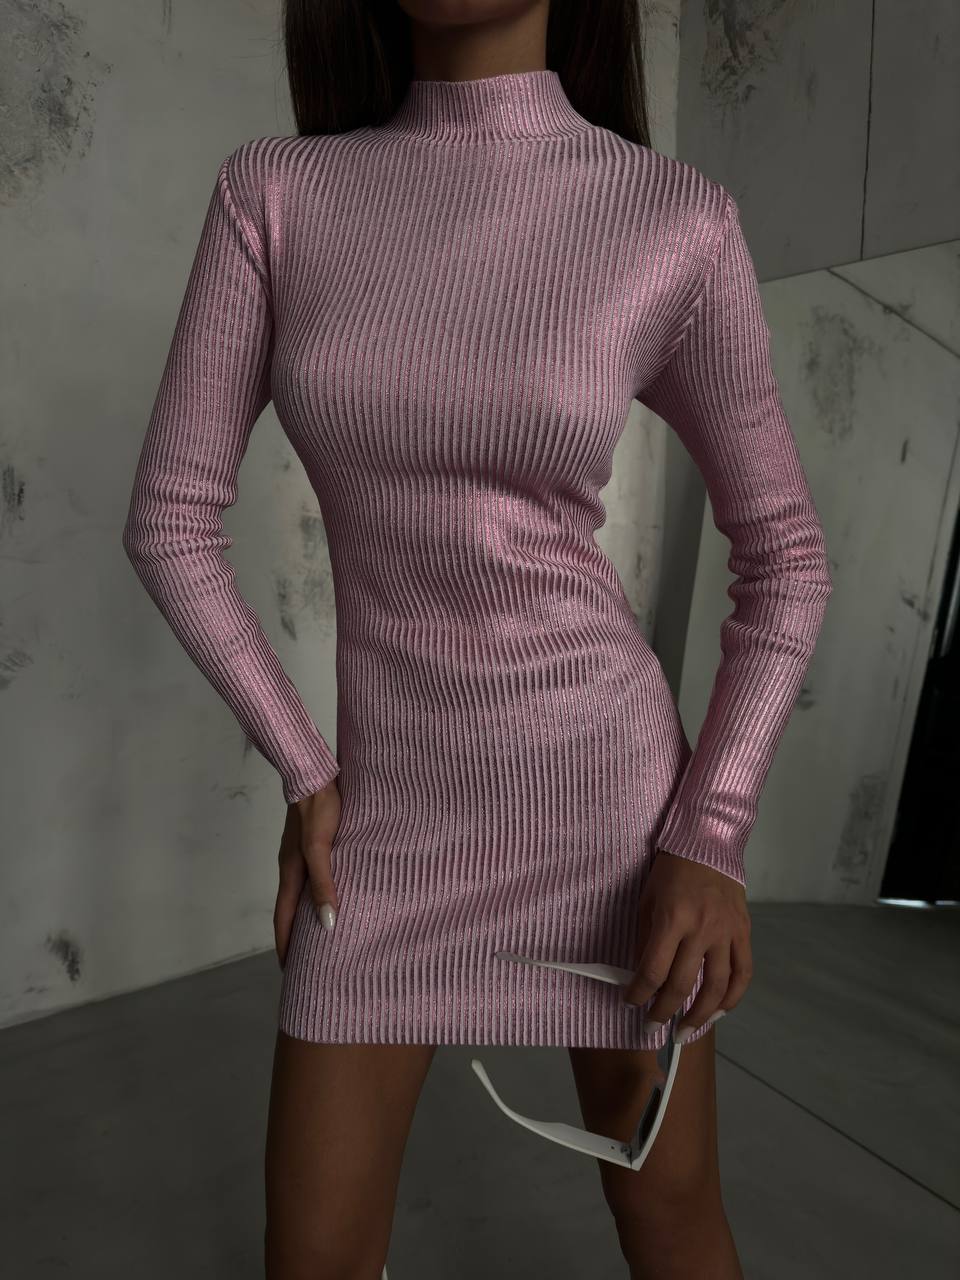 Дамска рокля Niels Pink  https://bvseductive.com/products/дамска-рокля-niels-pink  ефектна къса рокля в розов цвят втален модел, подчертаващ фигурата с дълъг ръкав и поло яка красиво предложение за Вашата визия